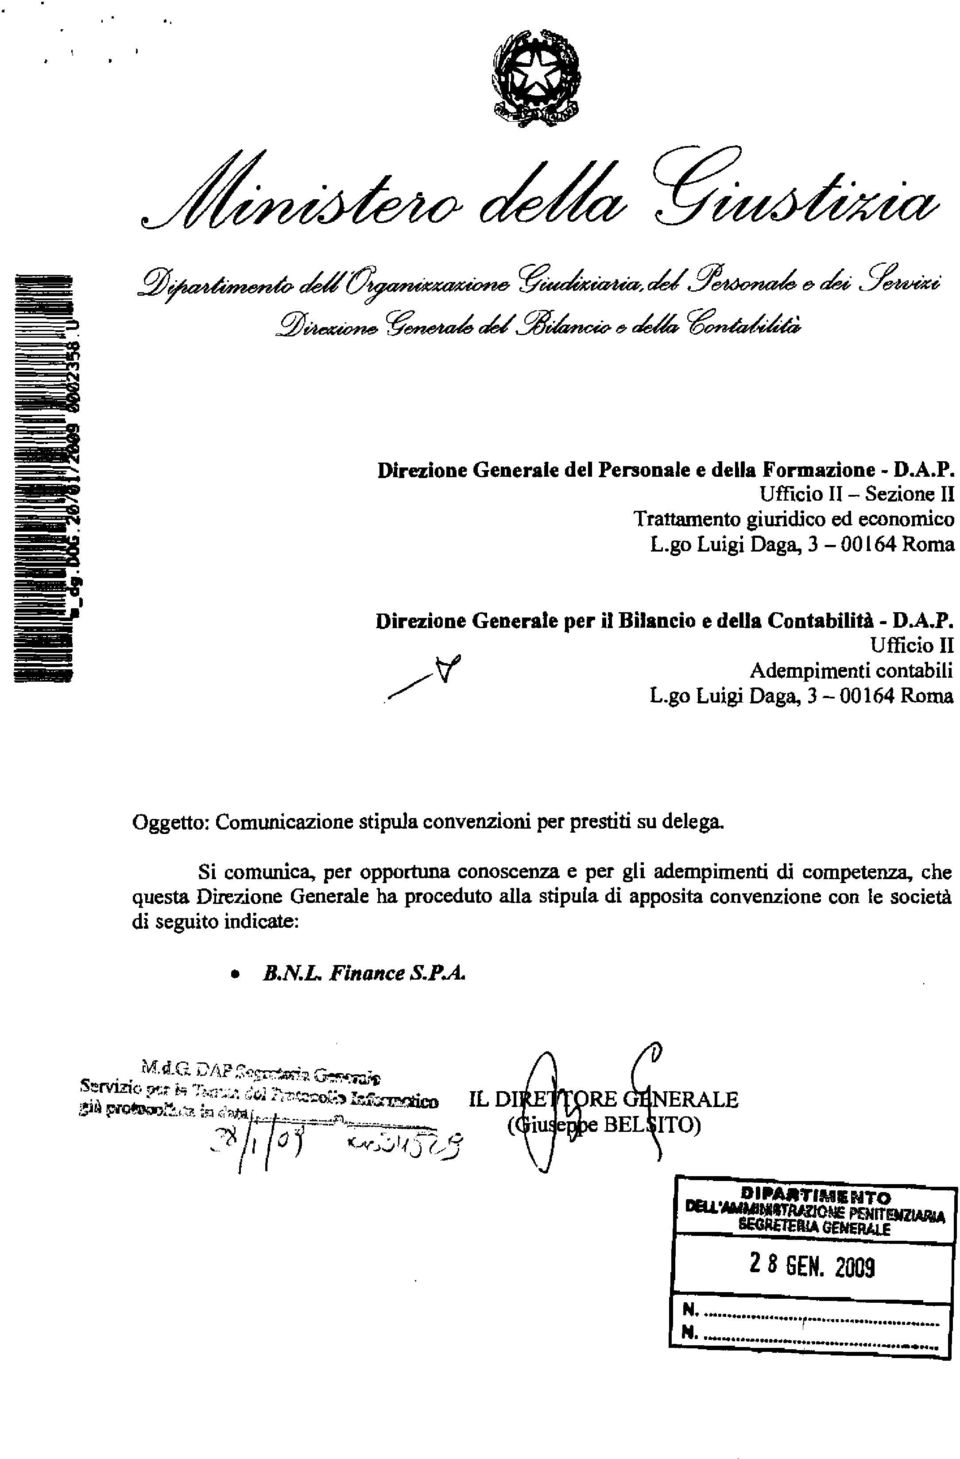 go Luigi Daga, 3-00164 Roma Oggetto: Comunicazione stipula convenzioni per prestiti su delega.